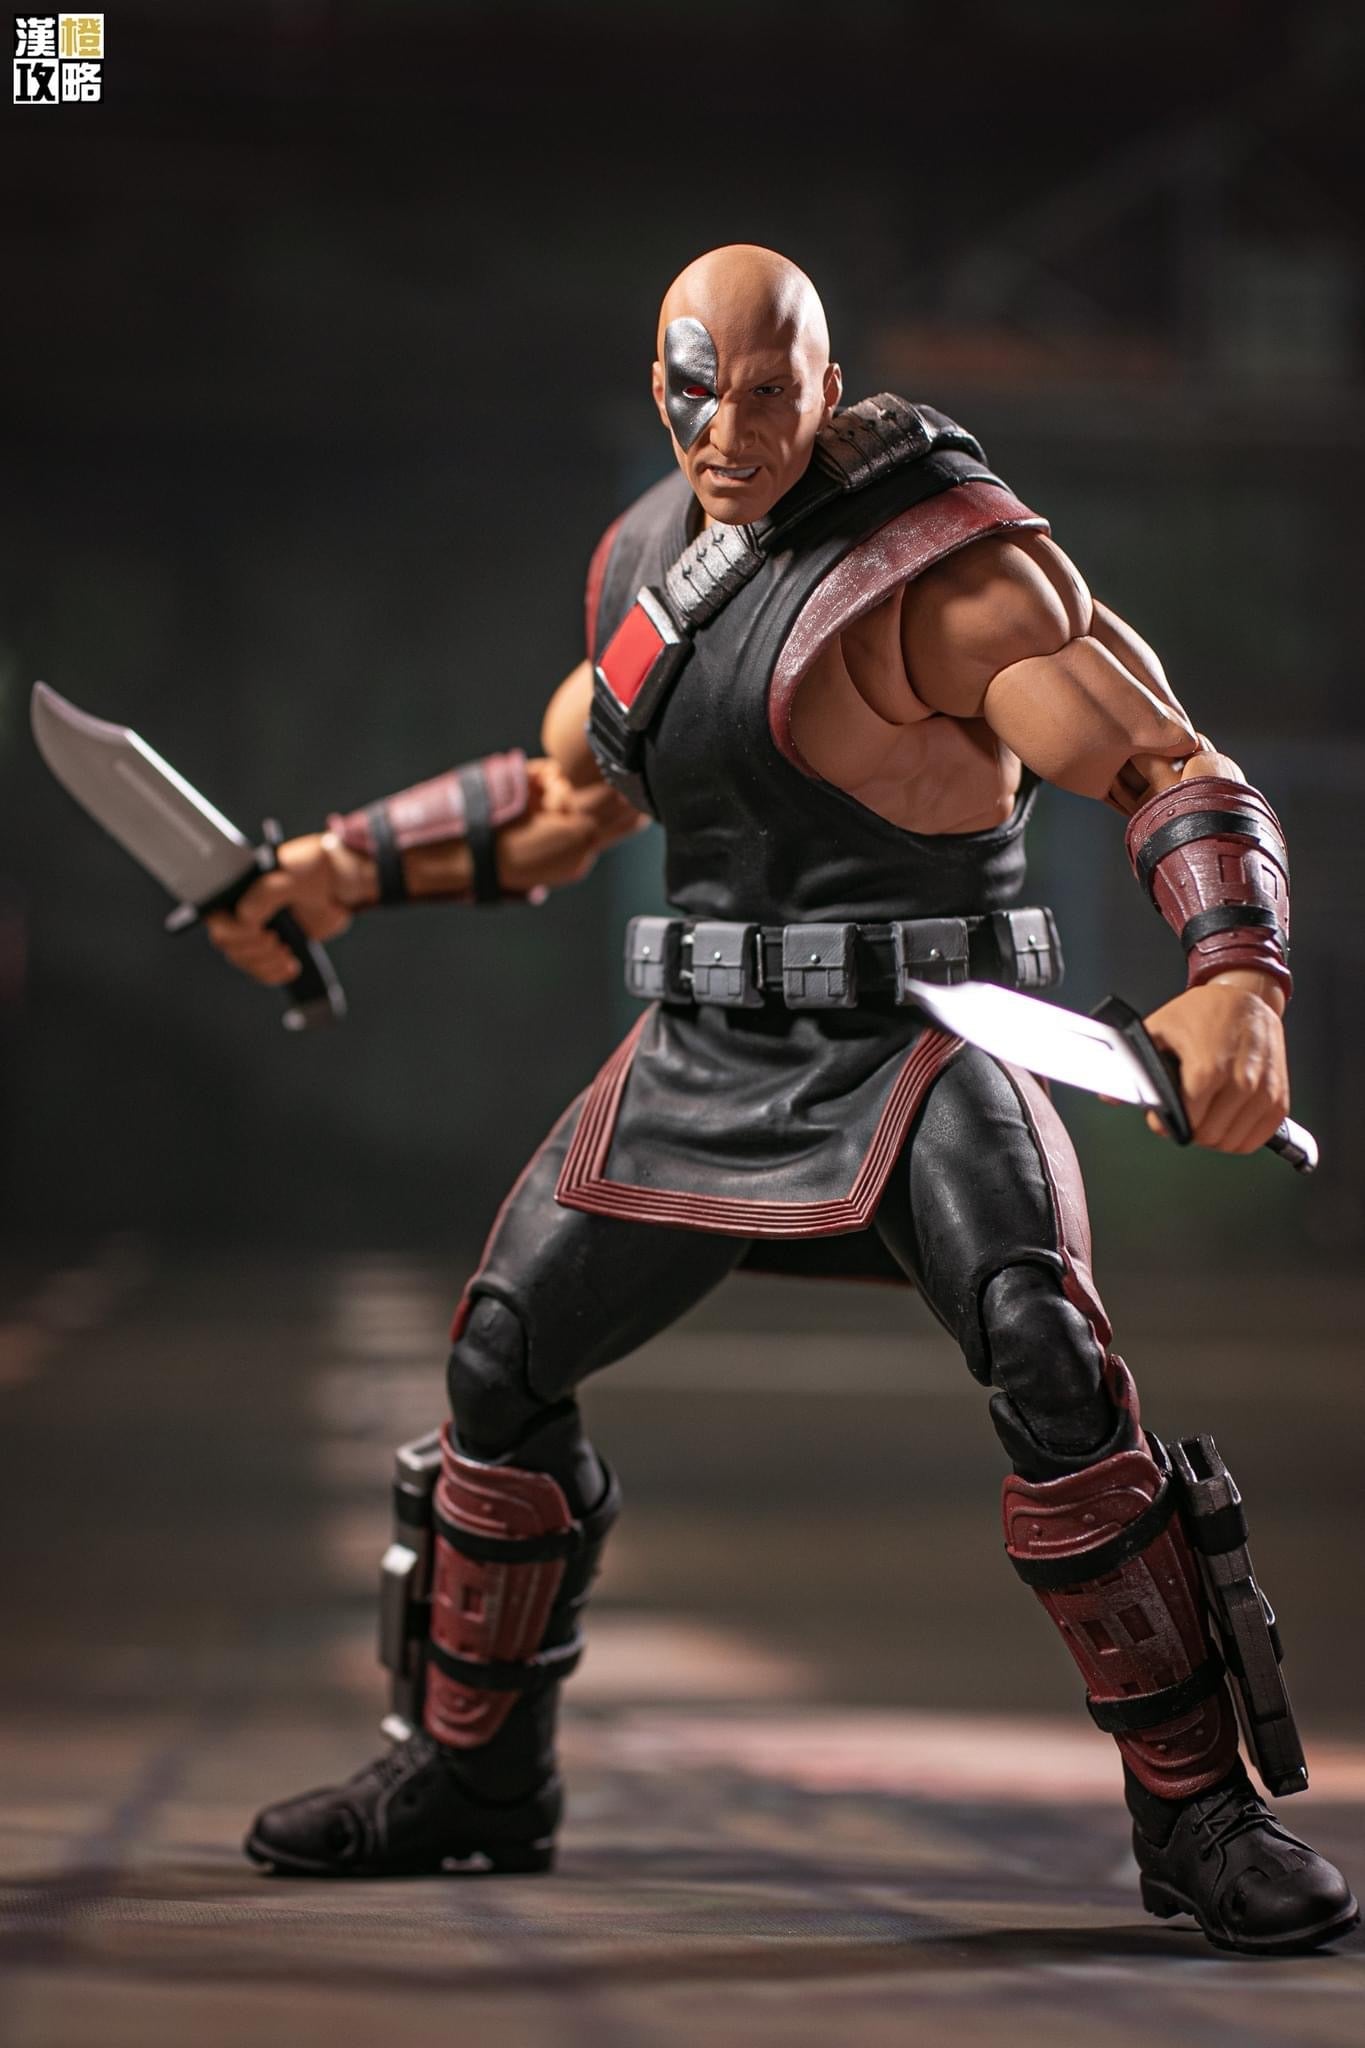 [EN STOCK] Figura Kano - Mortal Kombat marca Storm Collectibles escala 1/12